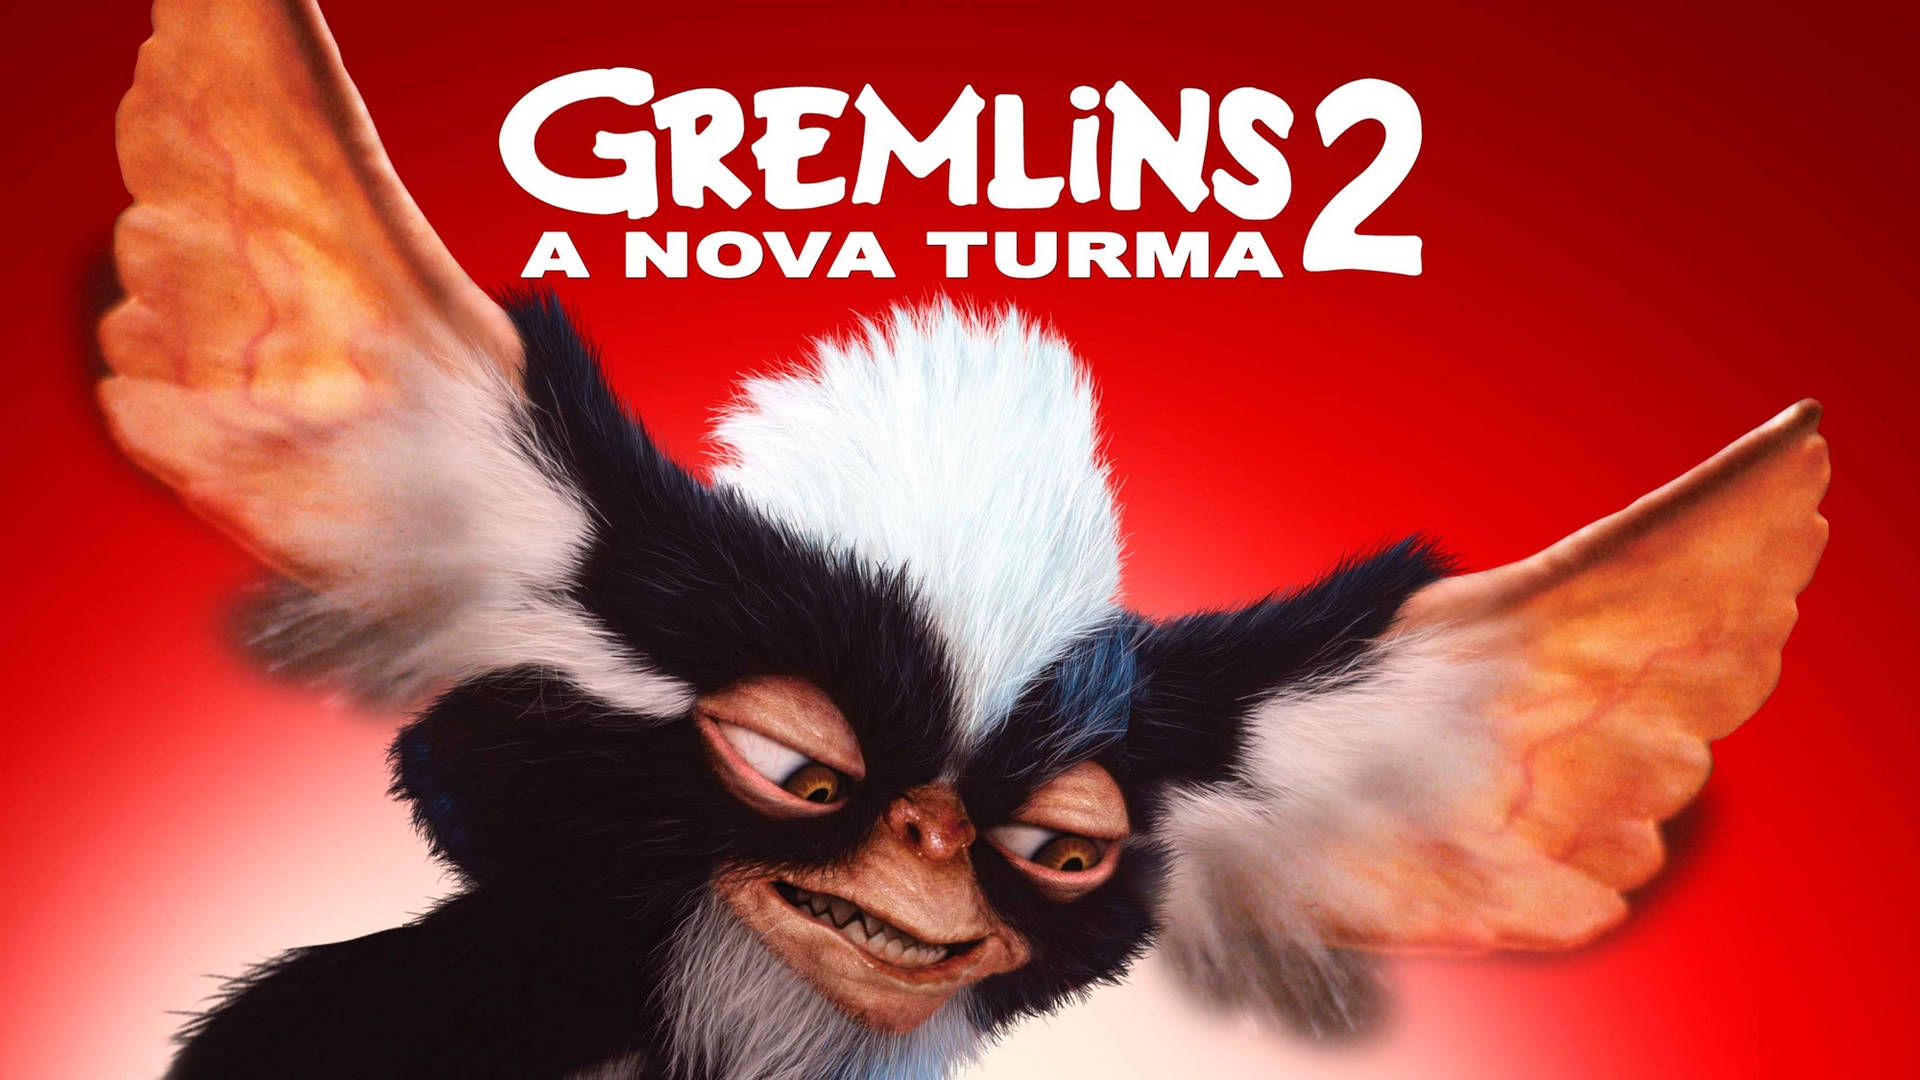 Gremlins2: Das Neue Poster Auf Portugiesisch Wallpaper